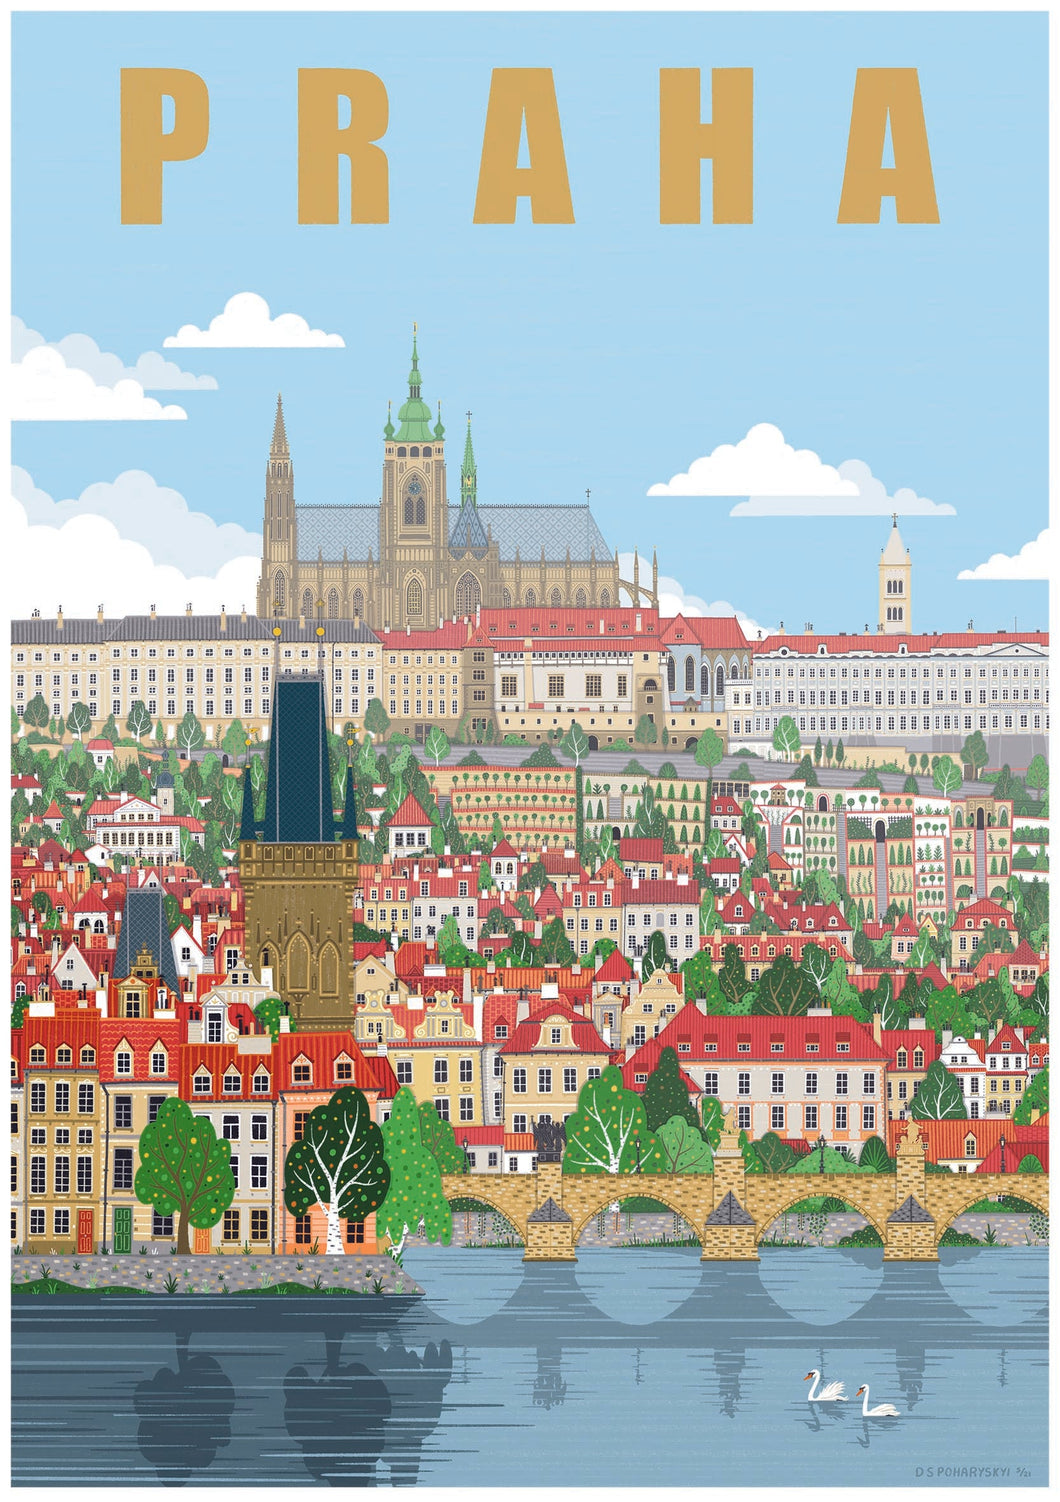 Prague castle poster - 24x34cm